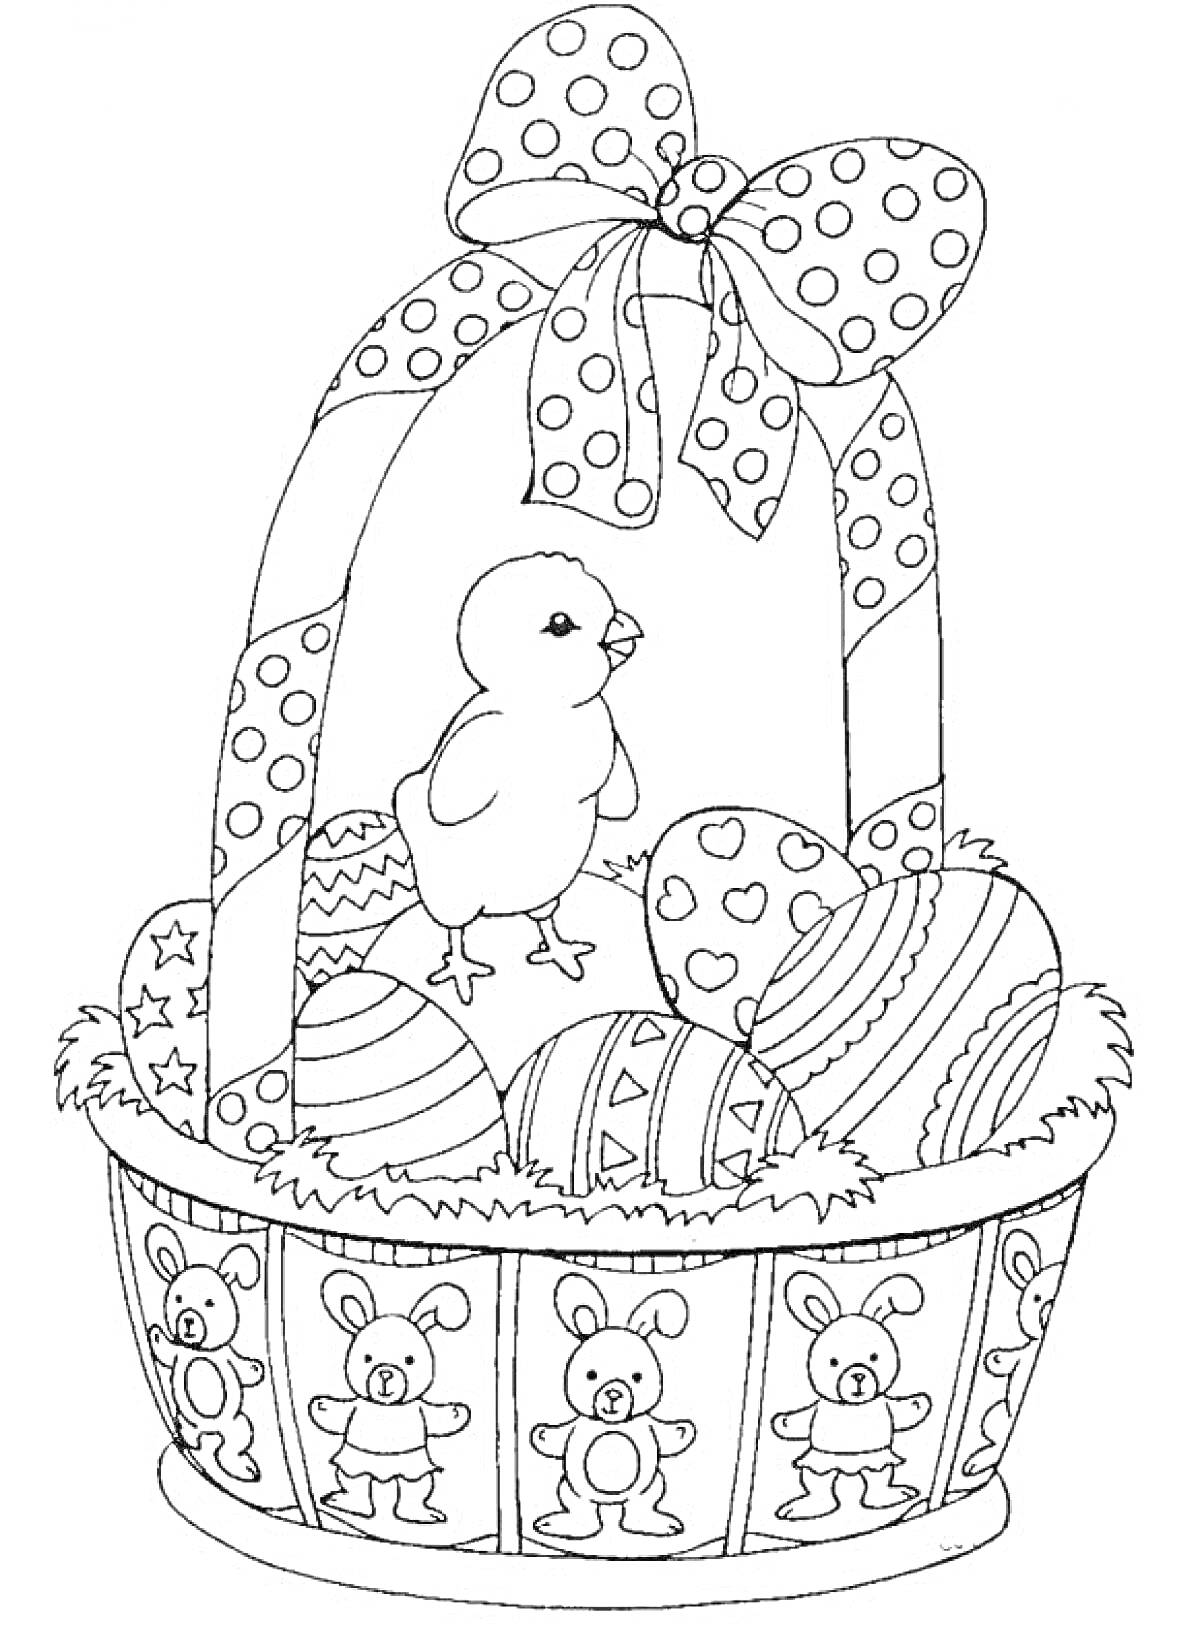 Раскраска Цыпленок в корзине с яйцами и бантом, украшенной зайцами